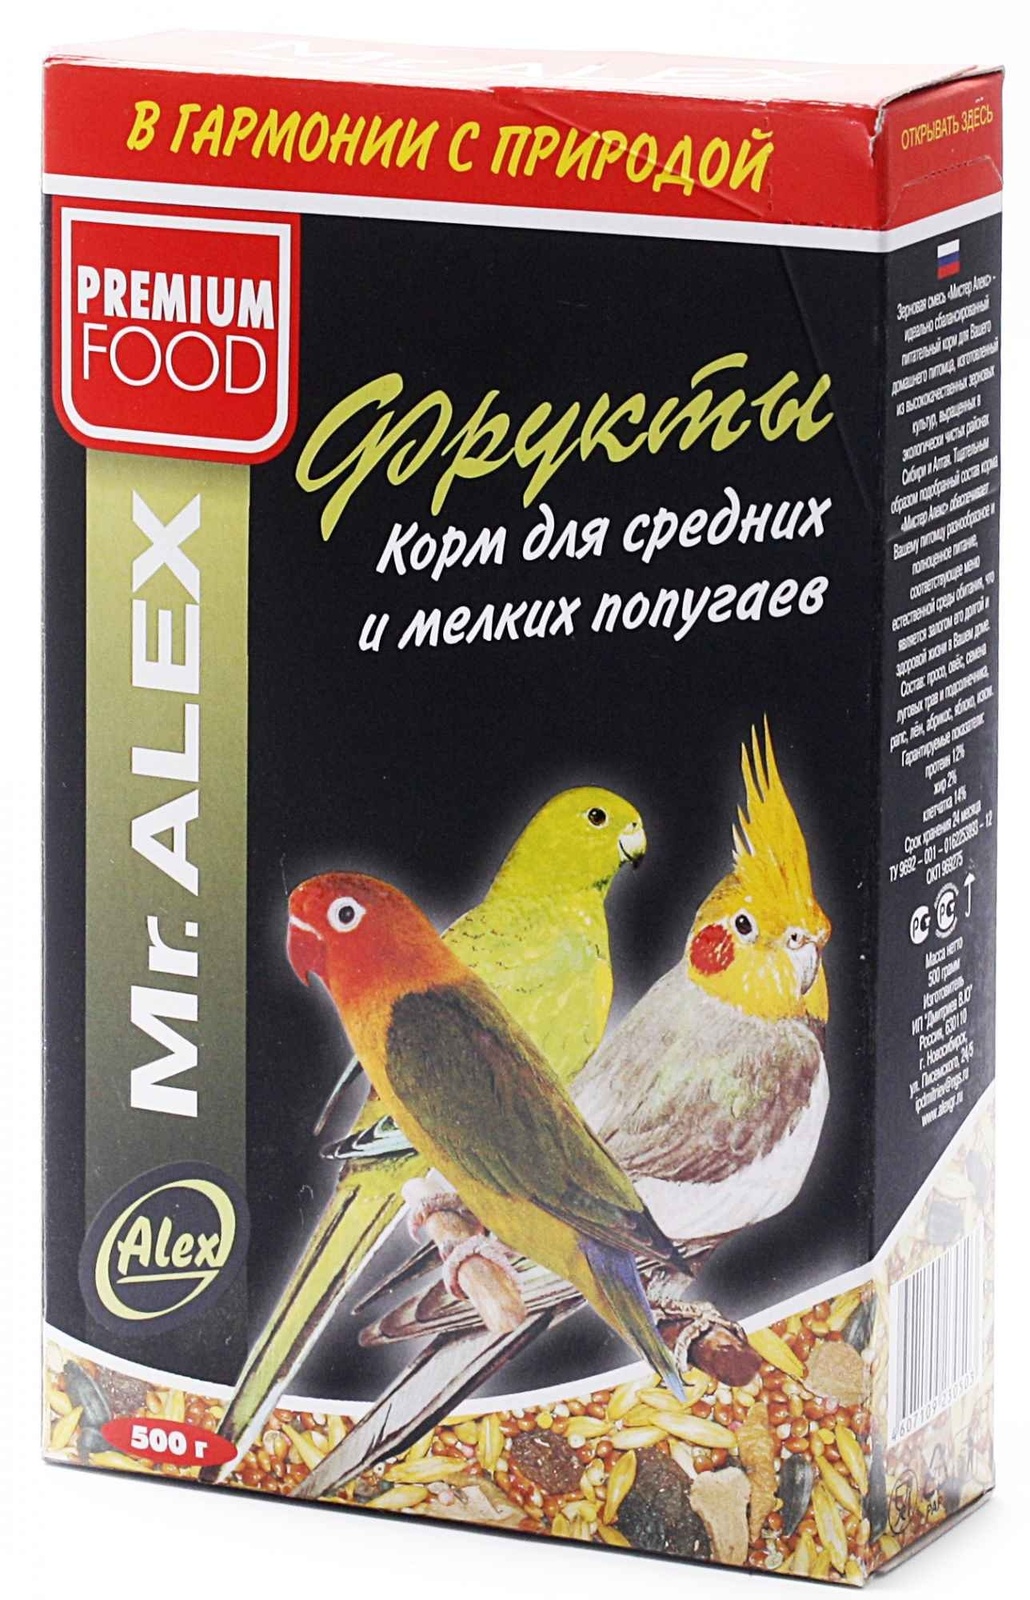 Mr.Alex Mr.Alex корм для средних и мелких попугаев Фрукты (500 г) mr alex mr alex корм для крупных попугаев экзот 500 г